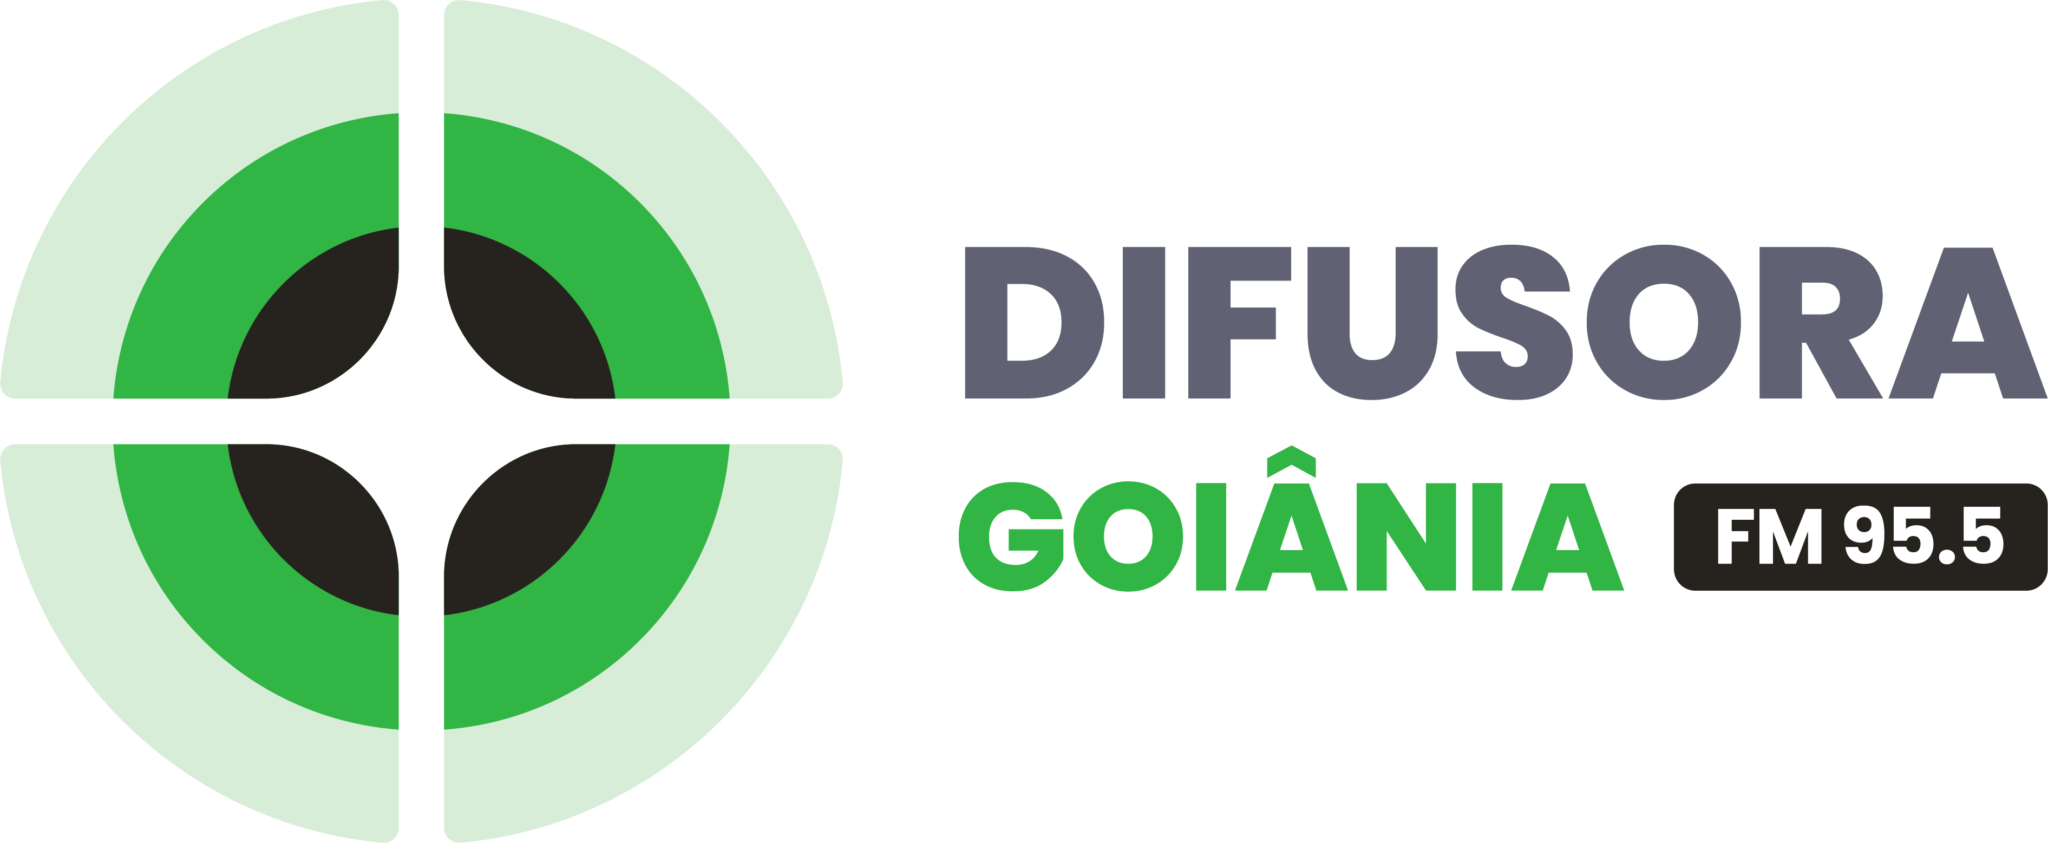 DIFUSORA GOIÂNIA - FM 95,5